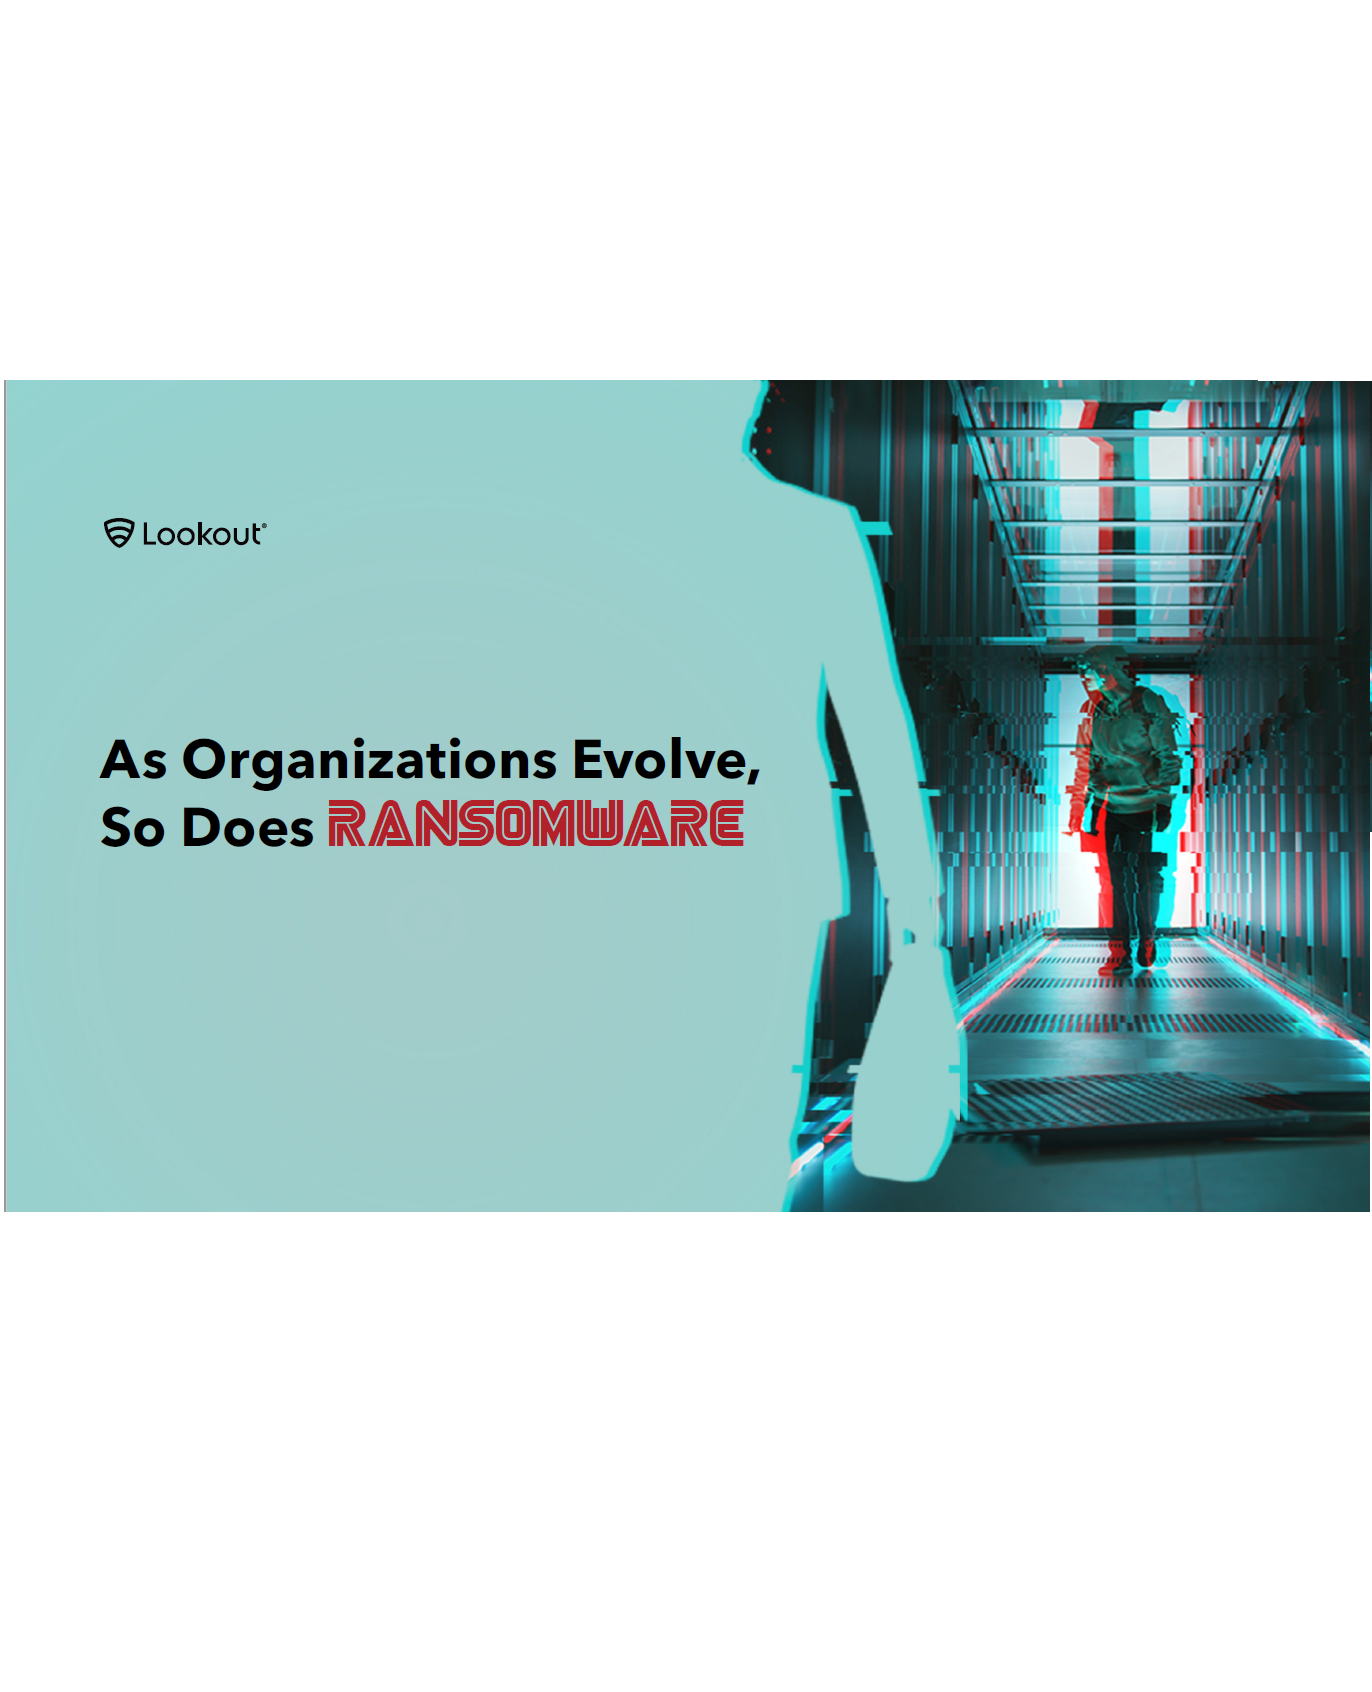 El Ransomware evoluciona a la par que las organizaciones